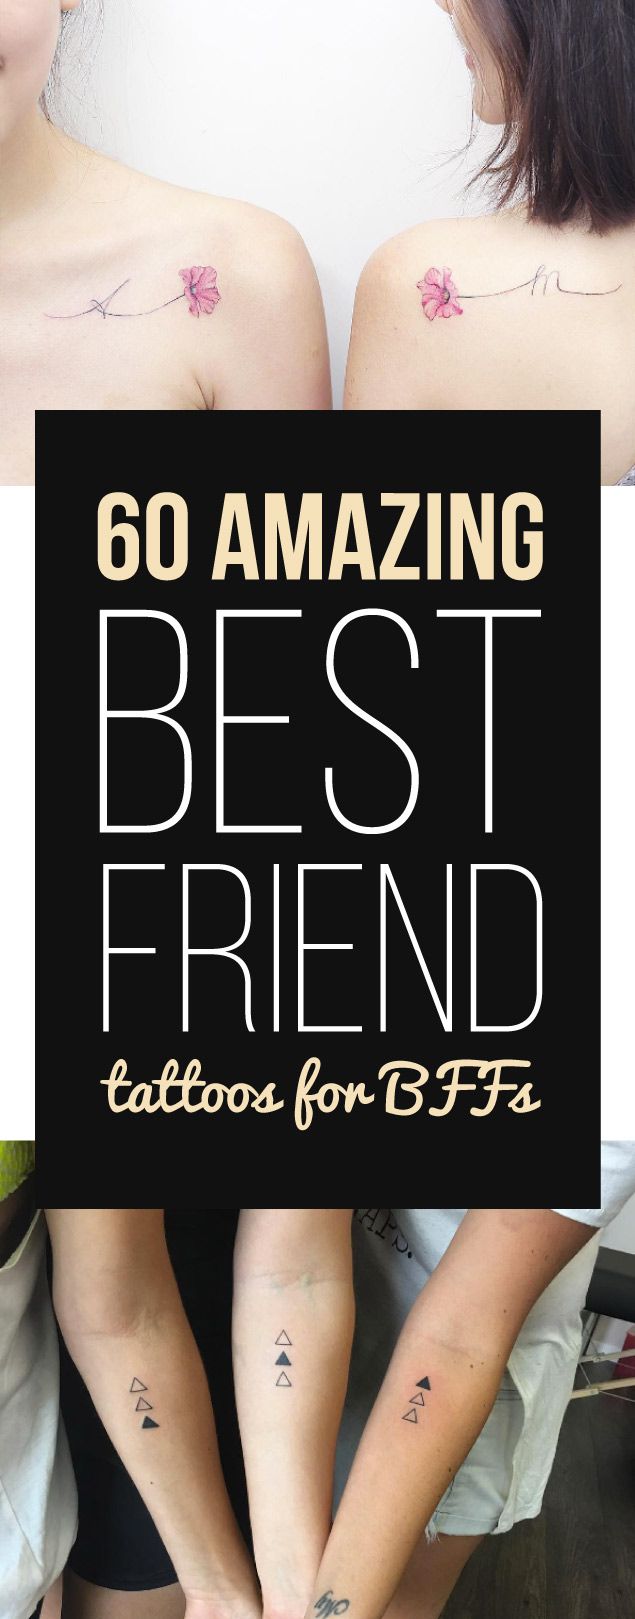 Best Small Best Friend Tattoo Designs - Matching Best Friend Tattoos For  Women: Cute Matc… | Matching best friend tattoos, Small best friend tattoos,  Friend tattoos